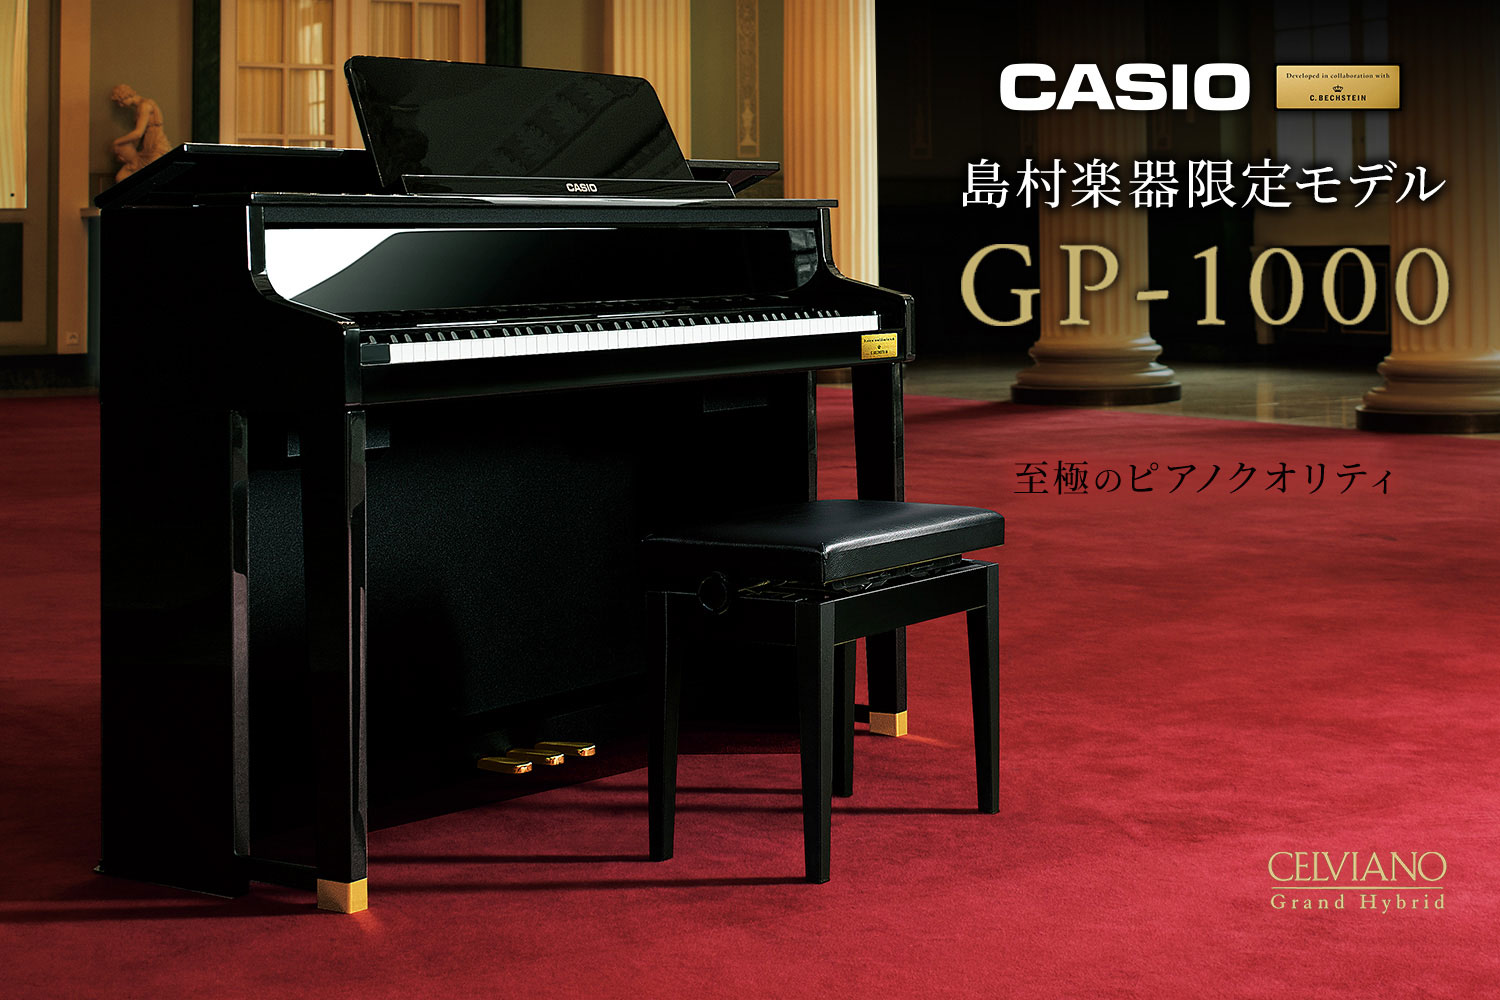 CASIO×C.ベヒシュタイン コラボレーション電子ピアノの島村楽器限定モデル「GP-1000」展示しております！